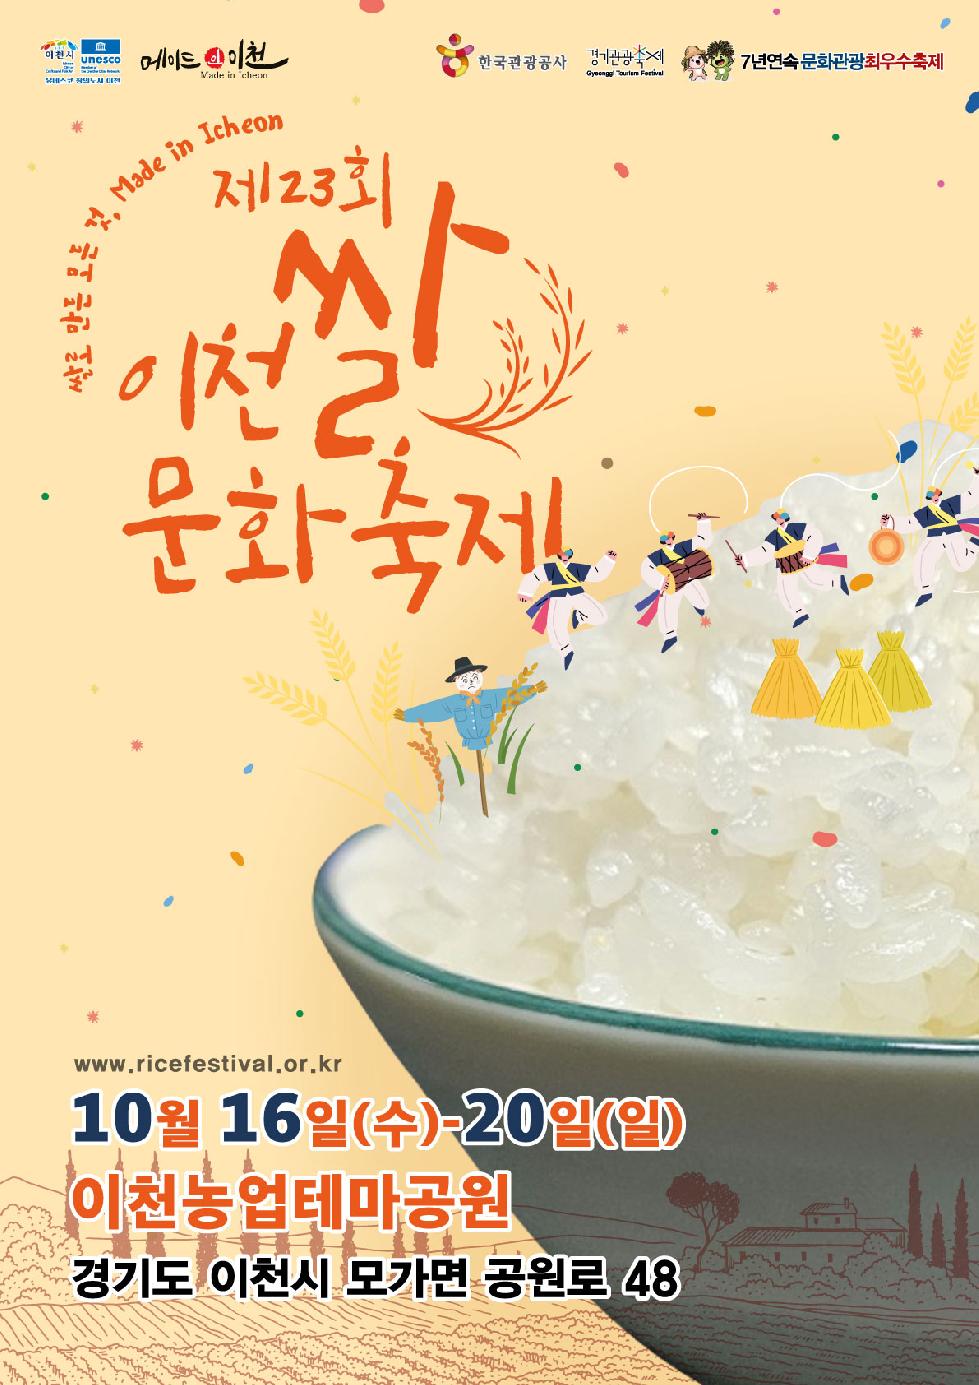 이천시 “촌스러움 아닌 예스러움” 이천쌀문화축제 공식 포스터 공개